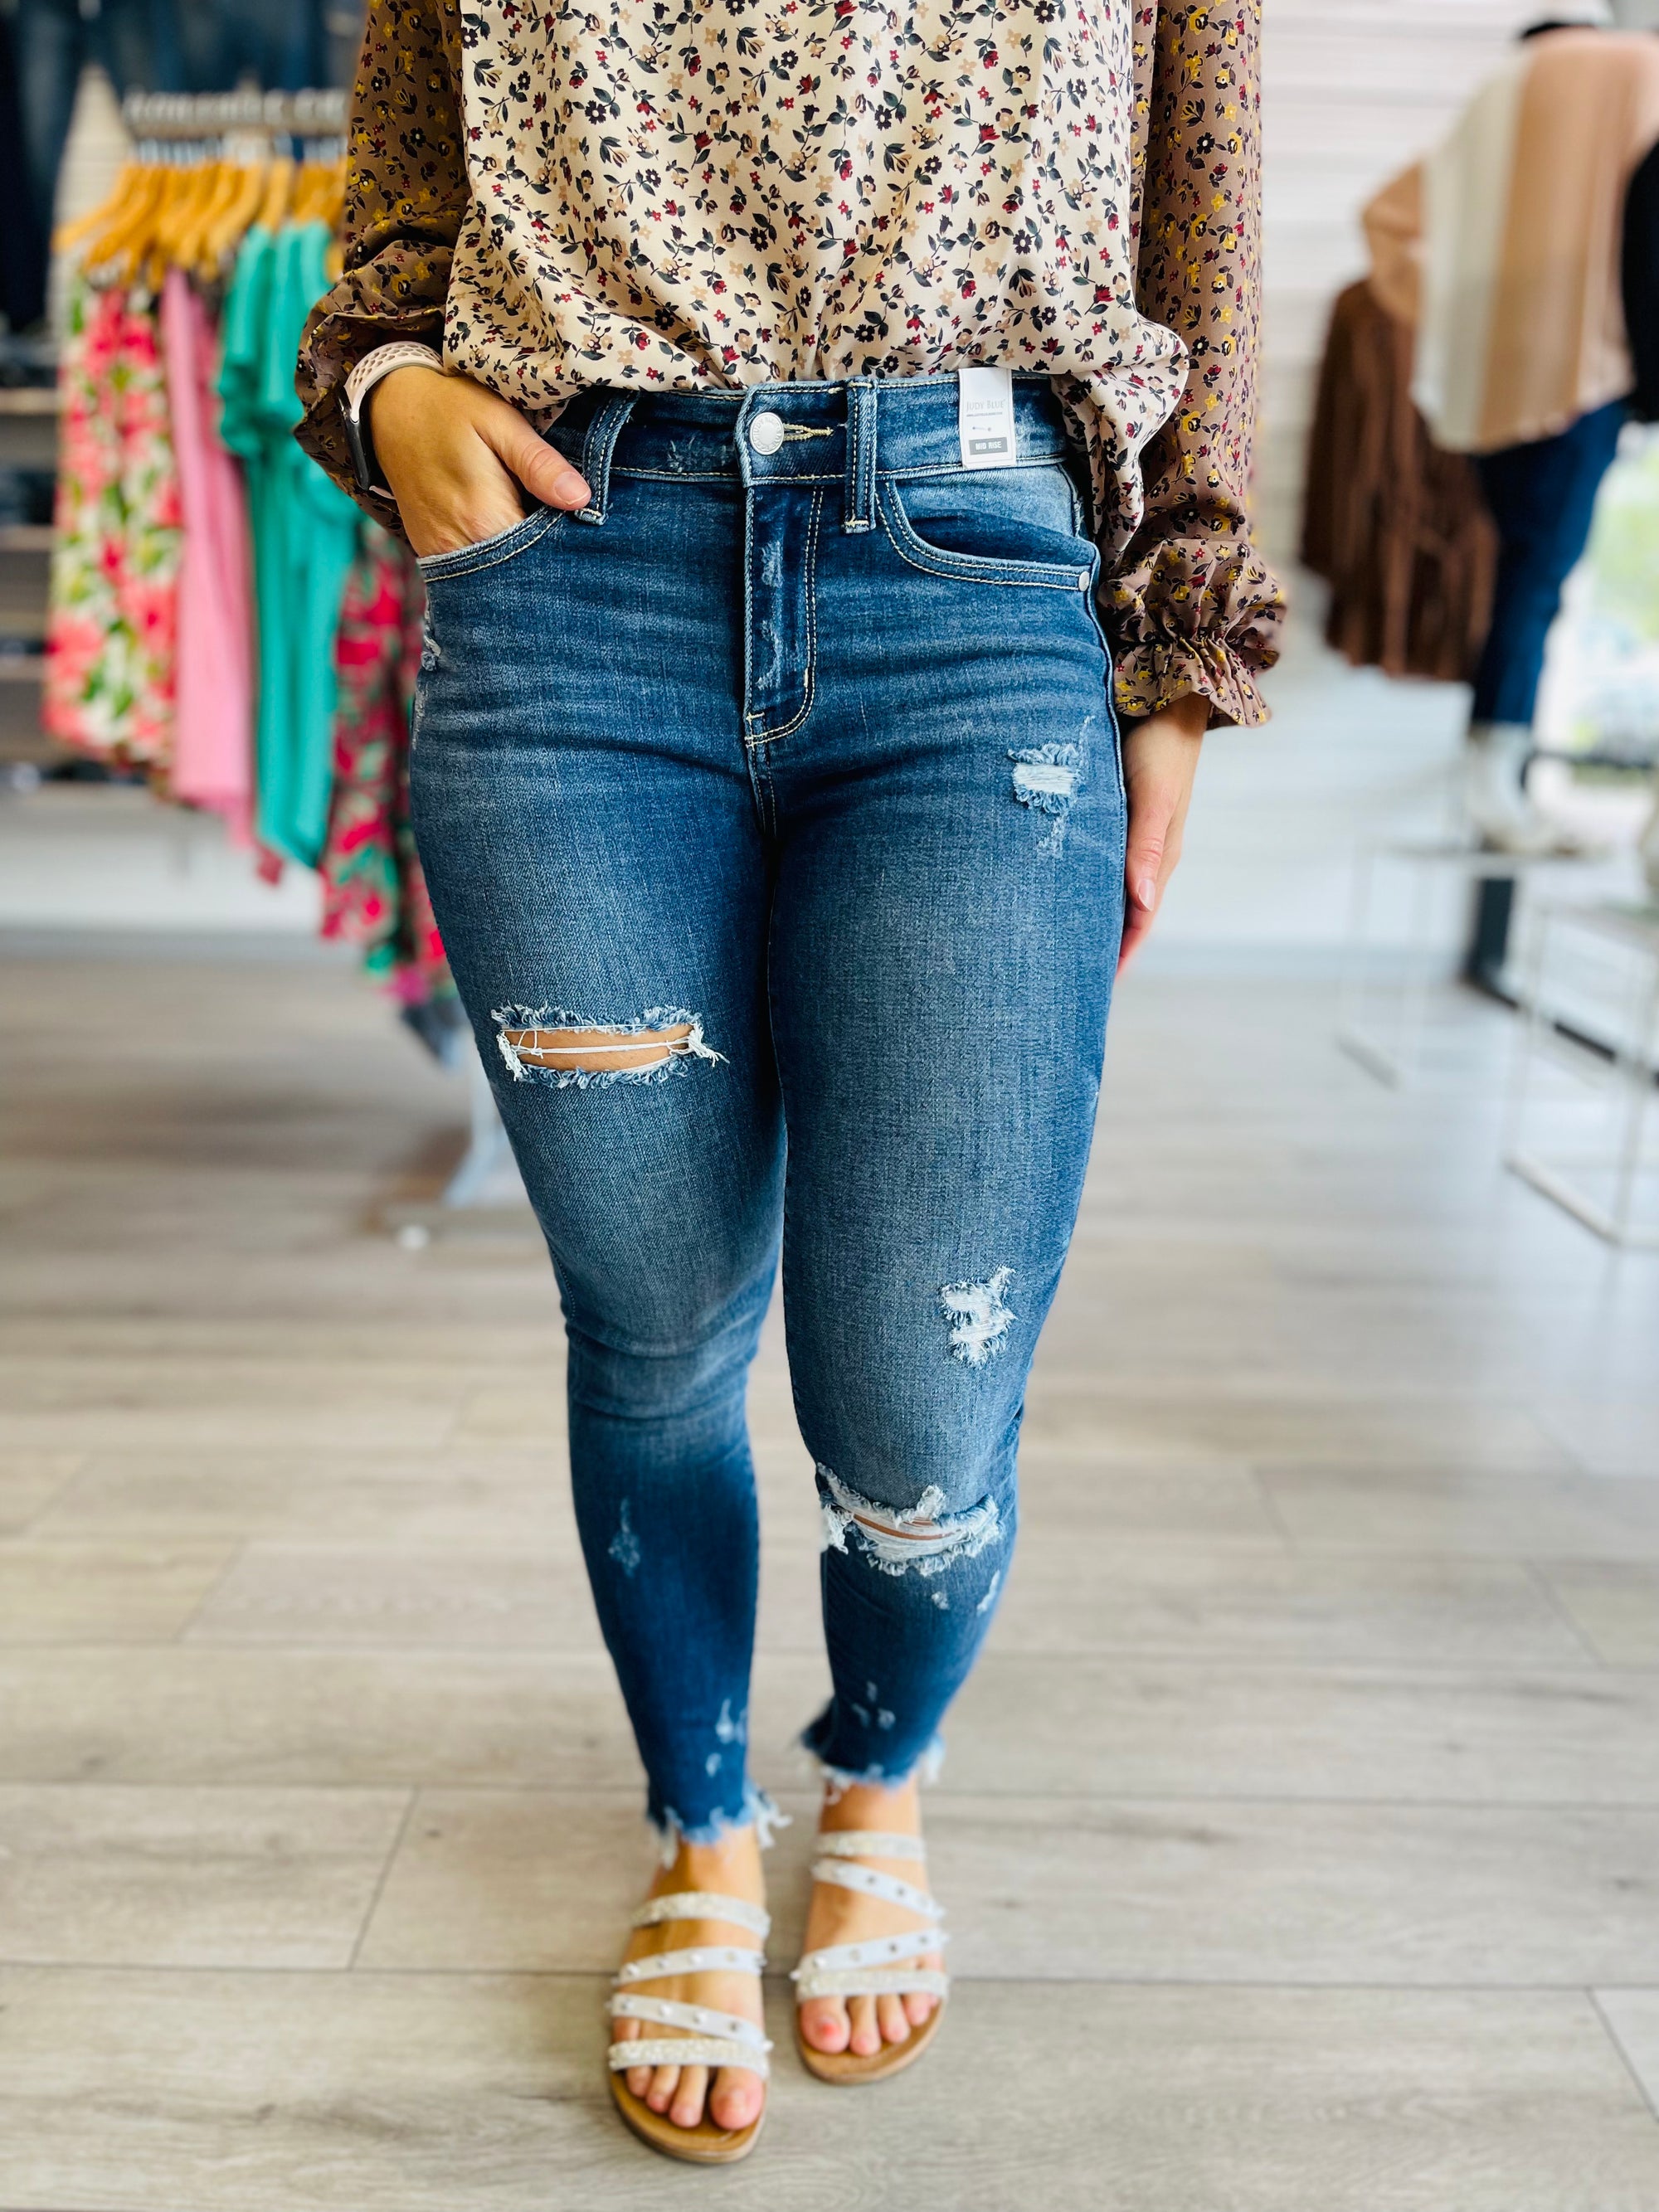 Flare Jeans for Tall Girls: Karlie Kloss x Frame Denim White Flare